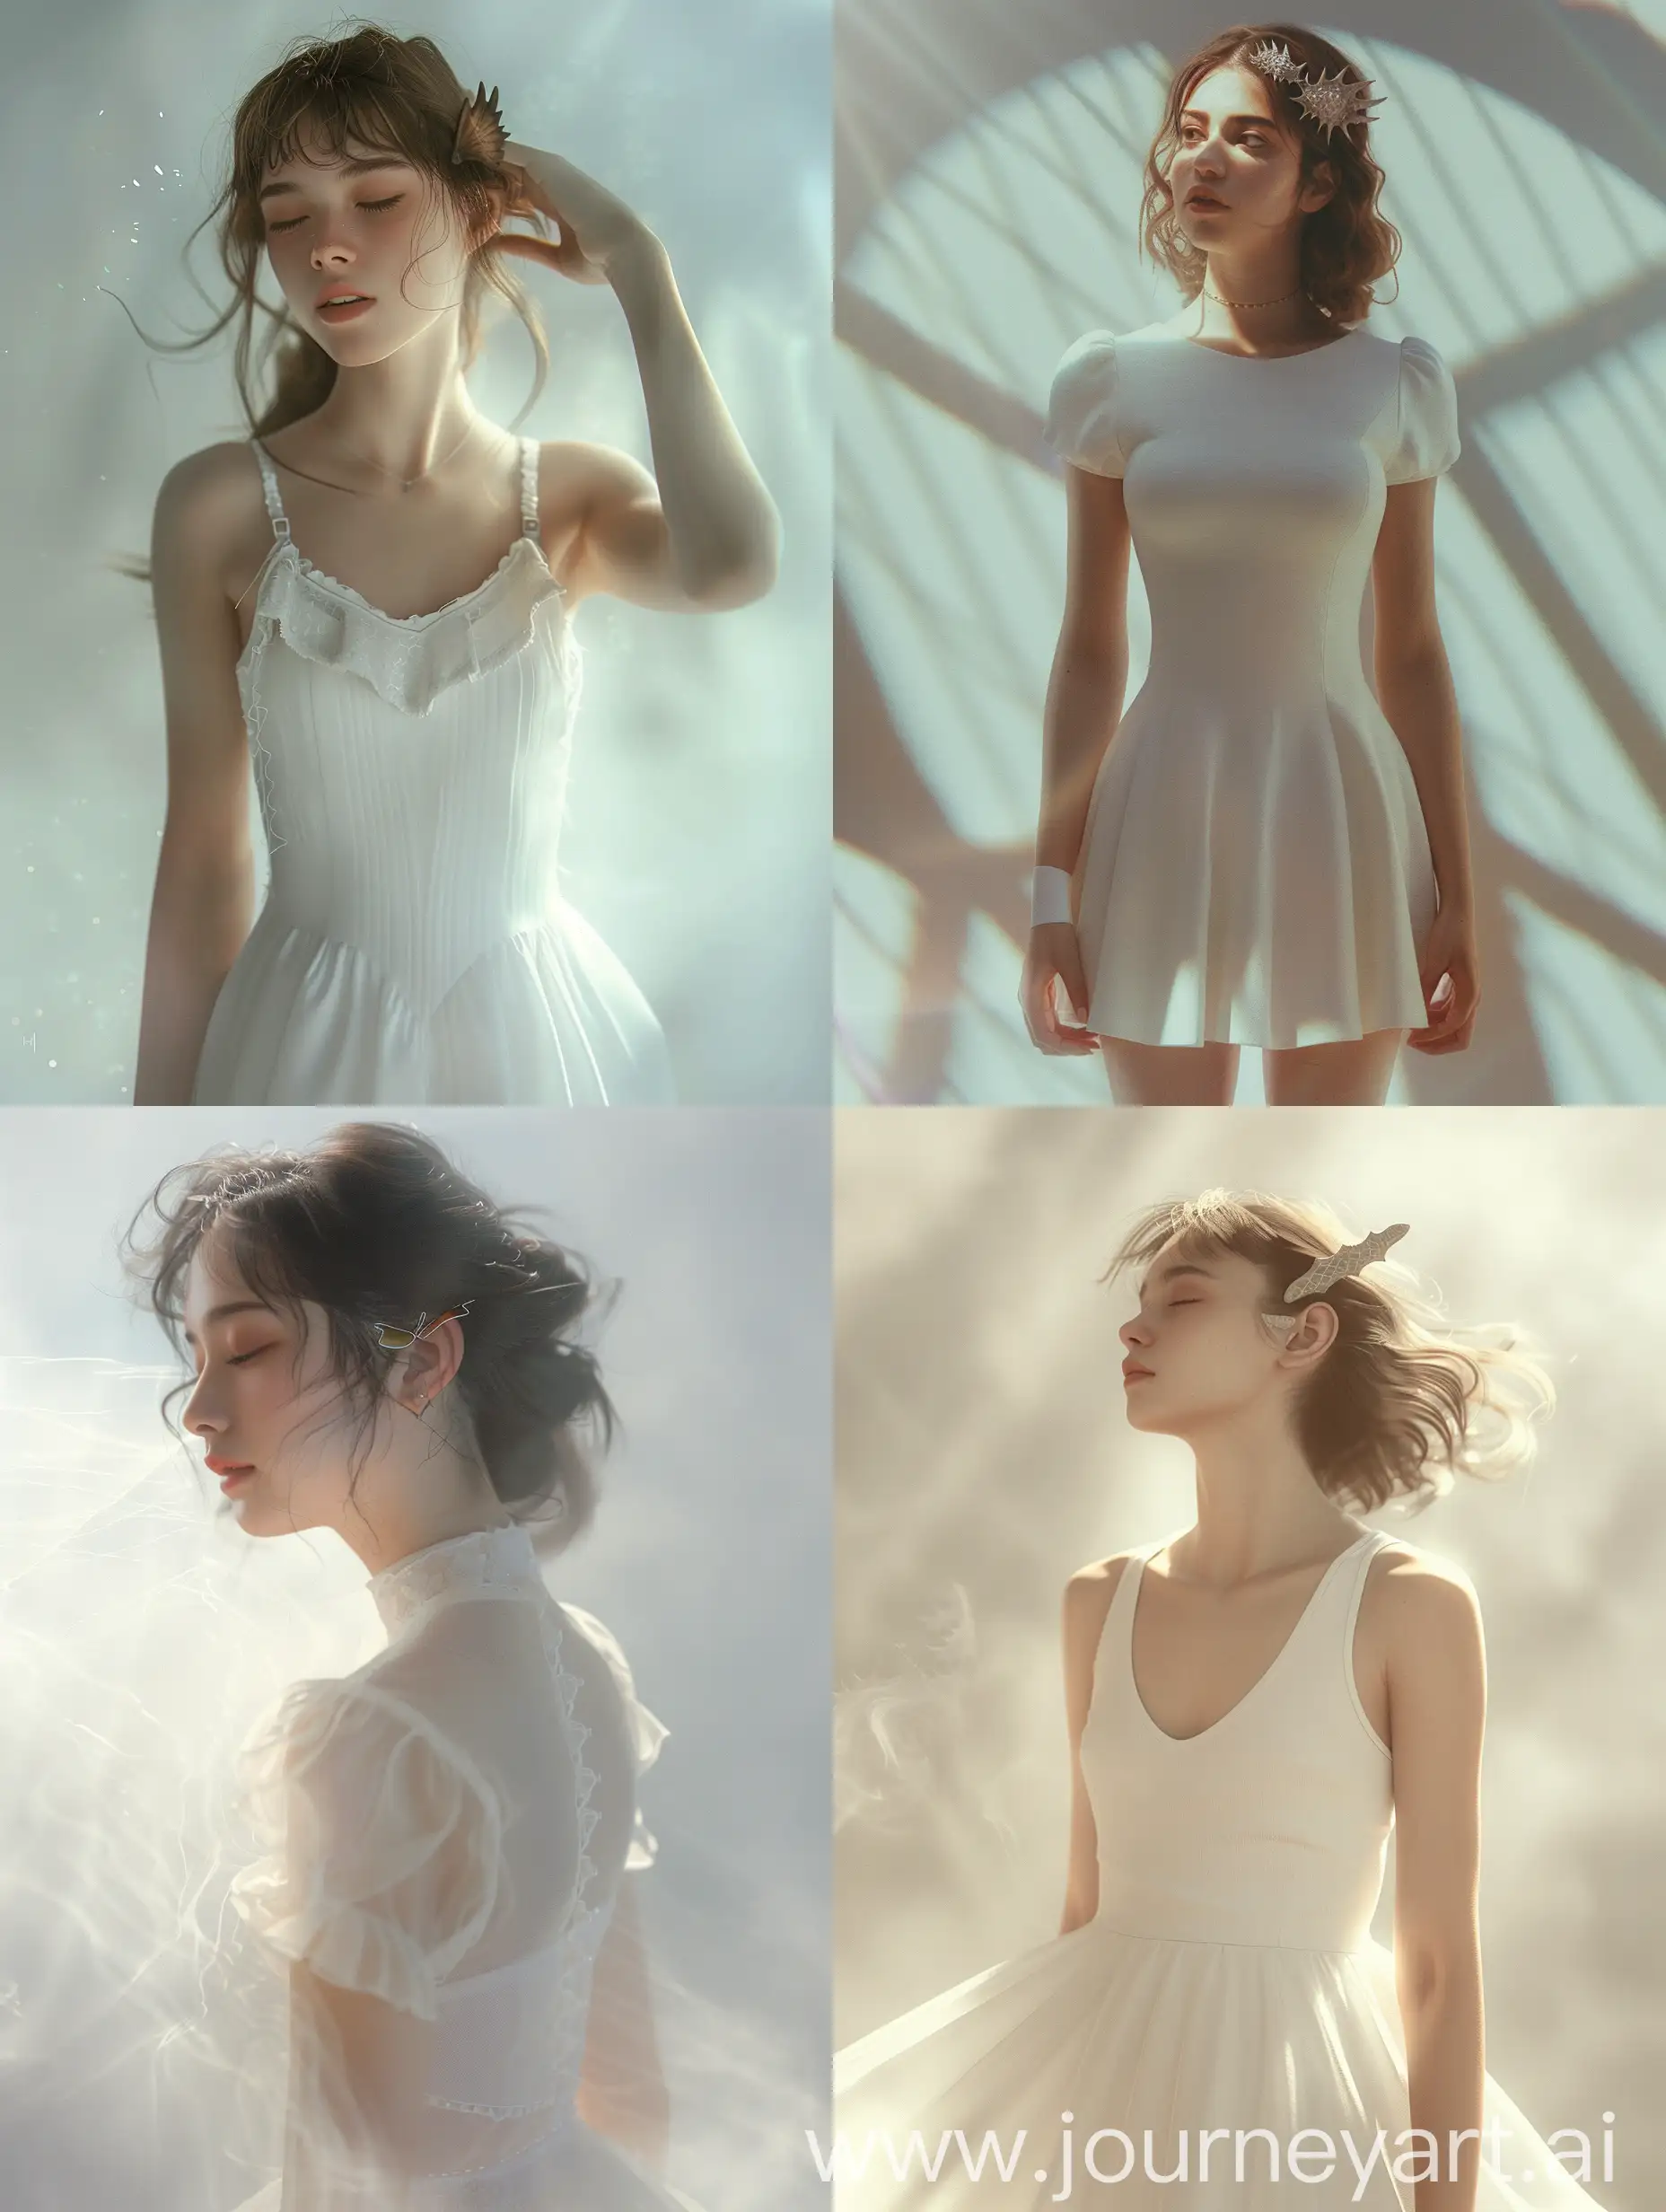 Девушка в простом белом платье, в волосах чешуя дракона, 8к, дымка, ультодетализация, плёночная фотография, рассеяние света, тенденции на артстанции, резкий фокус, высокая детализация